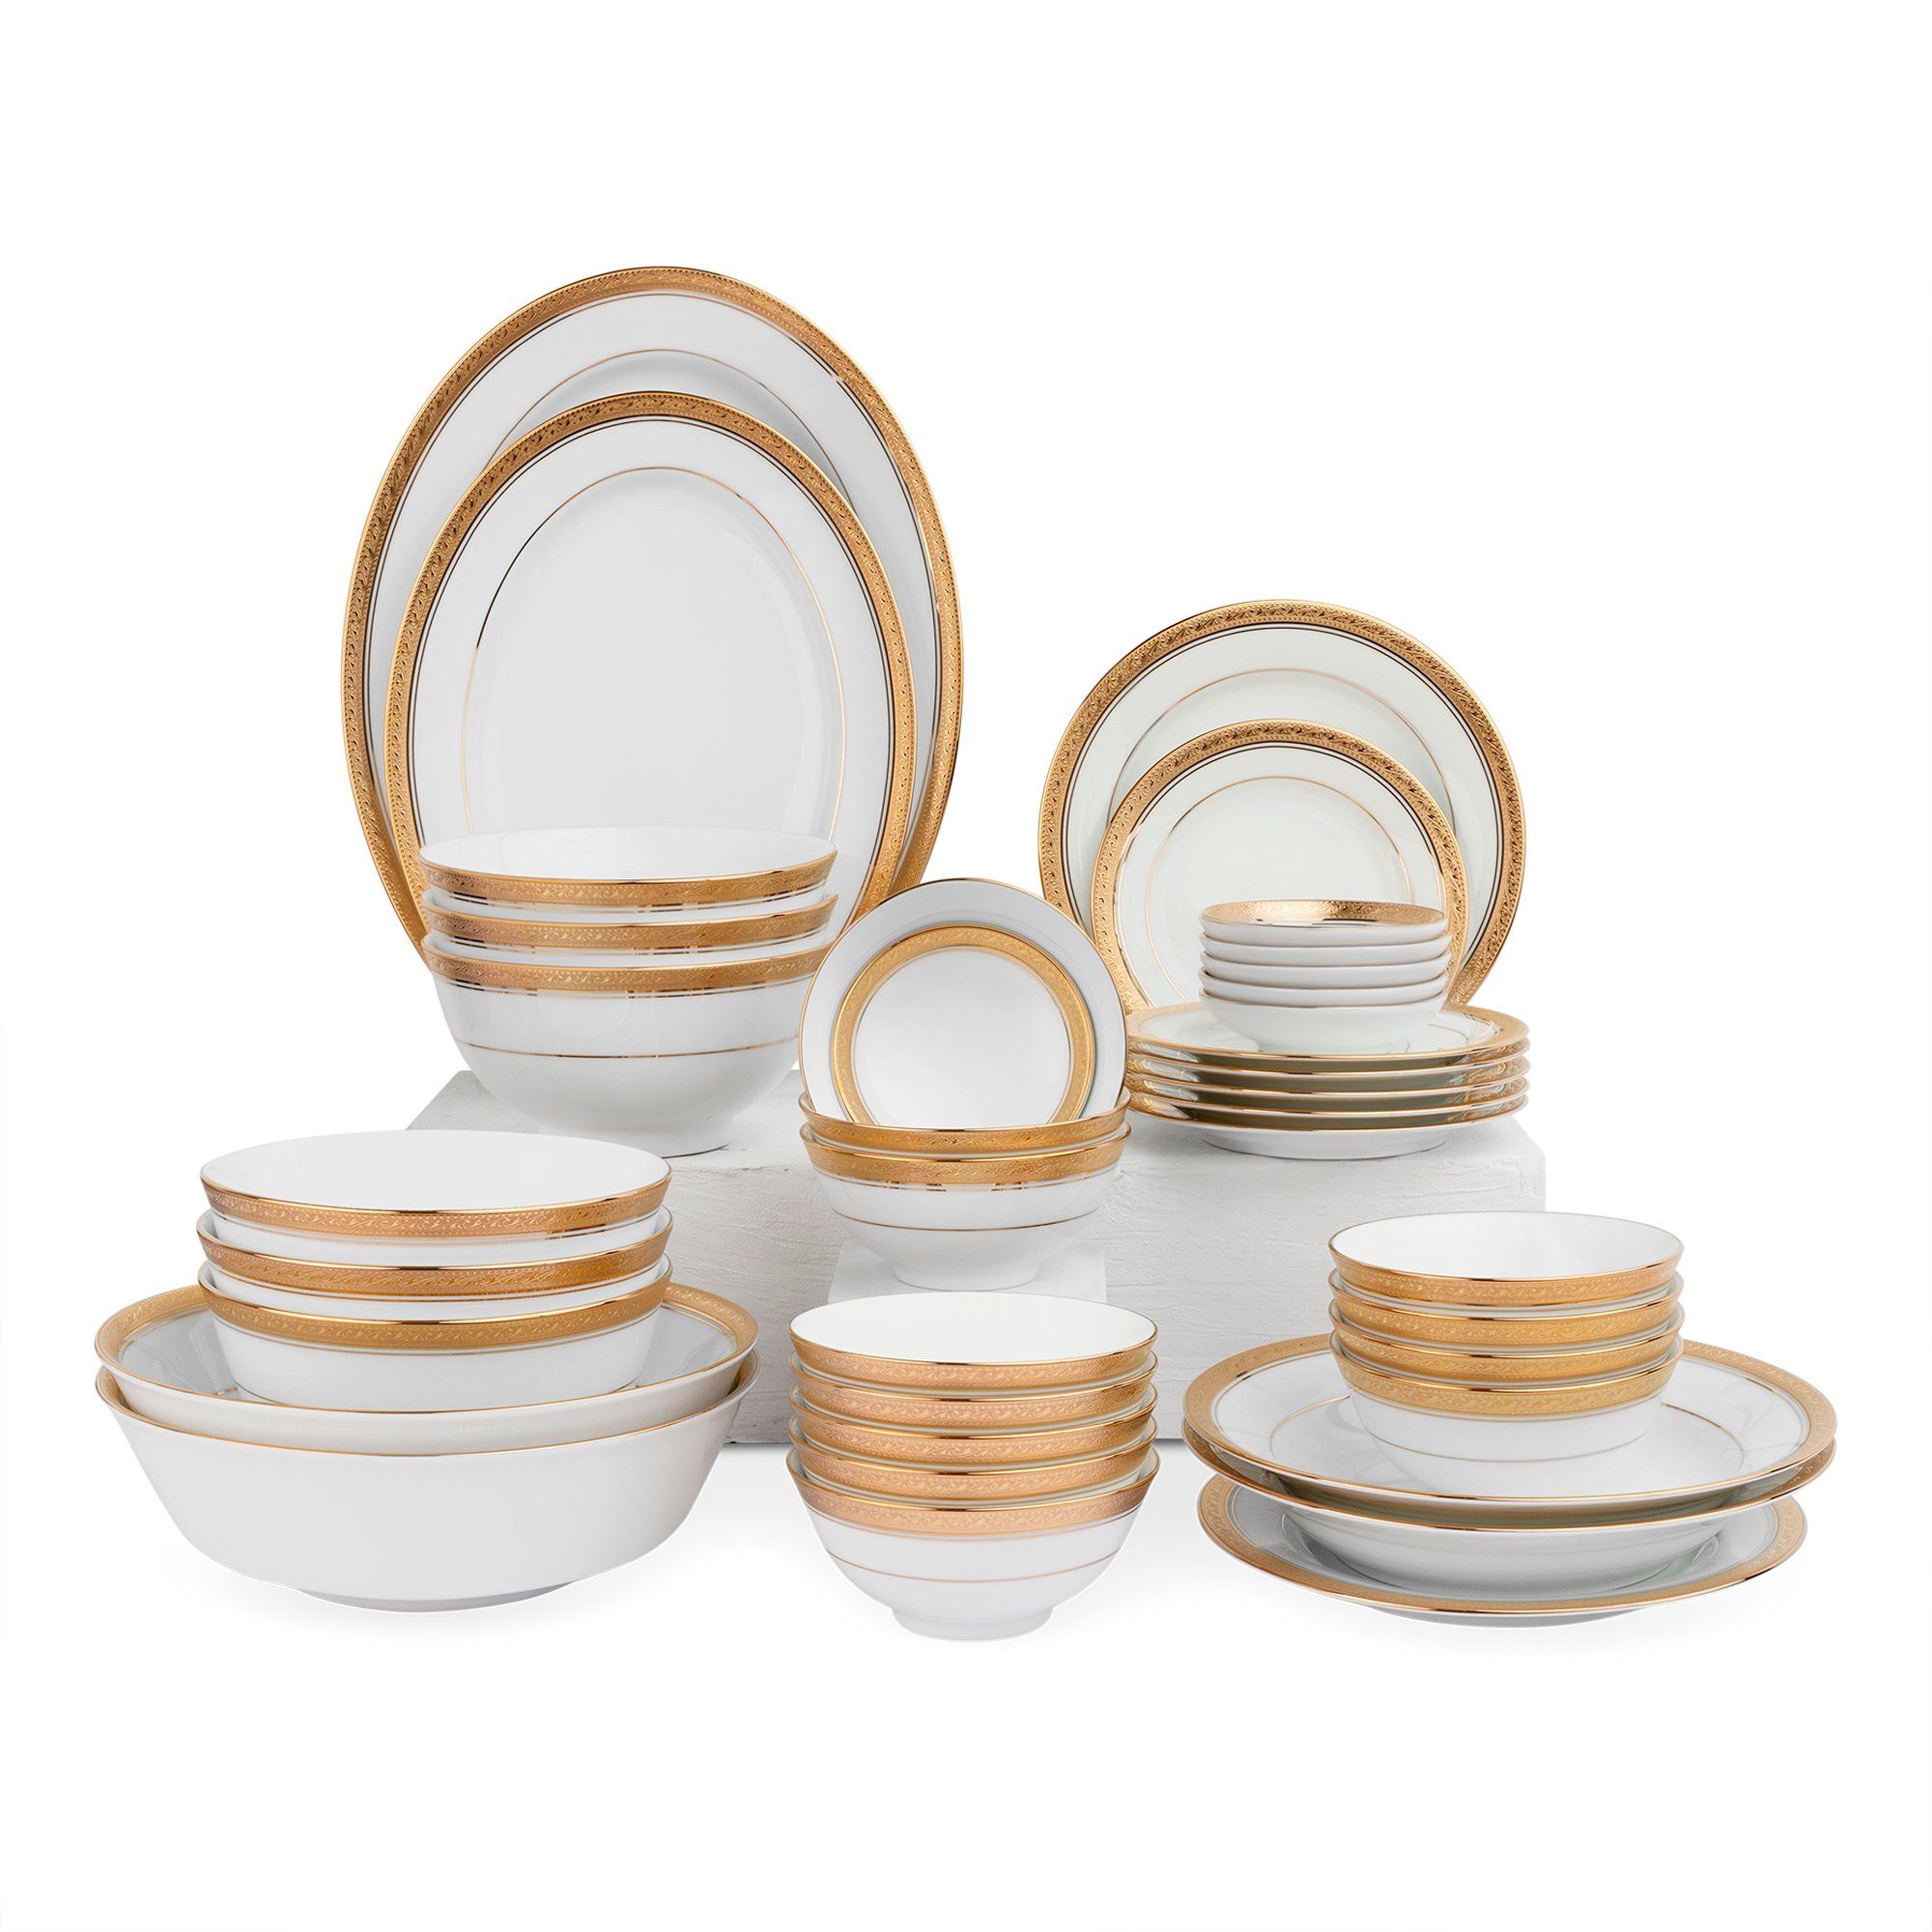  Bộ bát đĩa ăn Châu Á đầy đủ 38 món sứ trắng | Crestwood Gold 4167L 